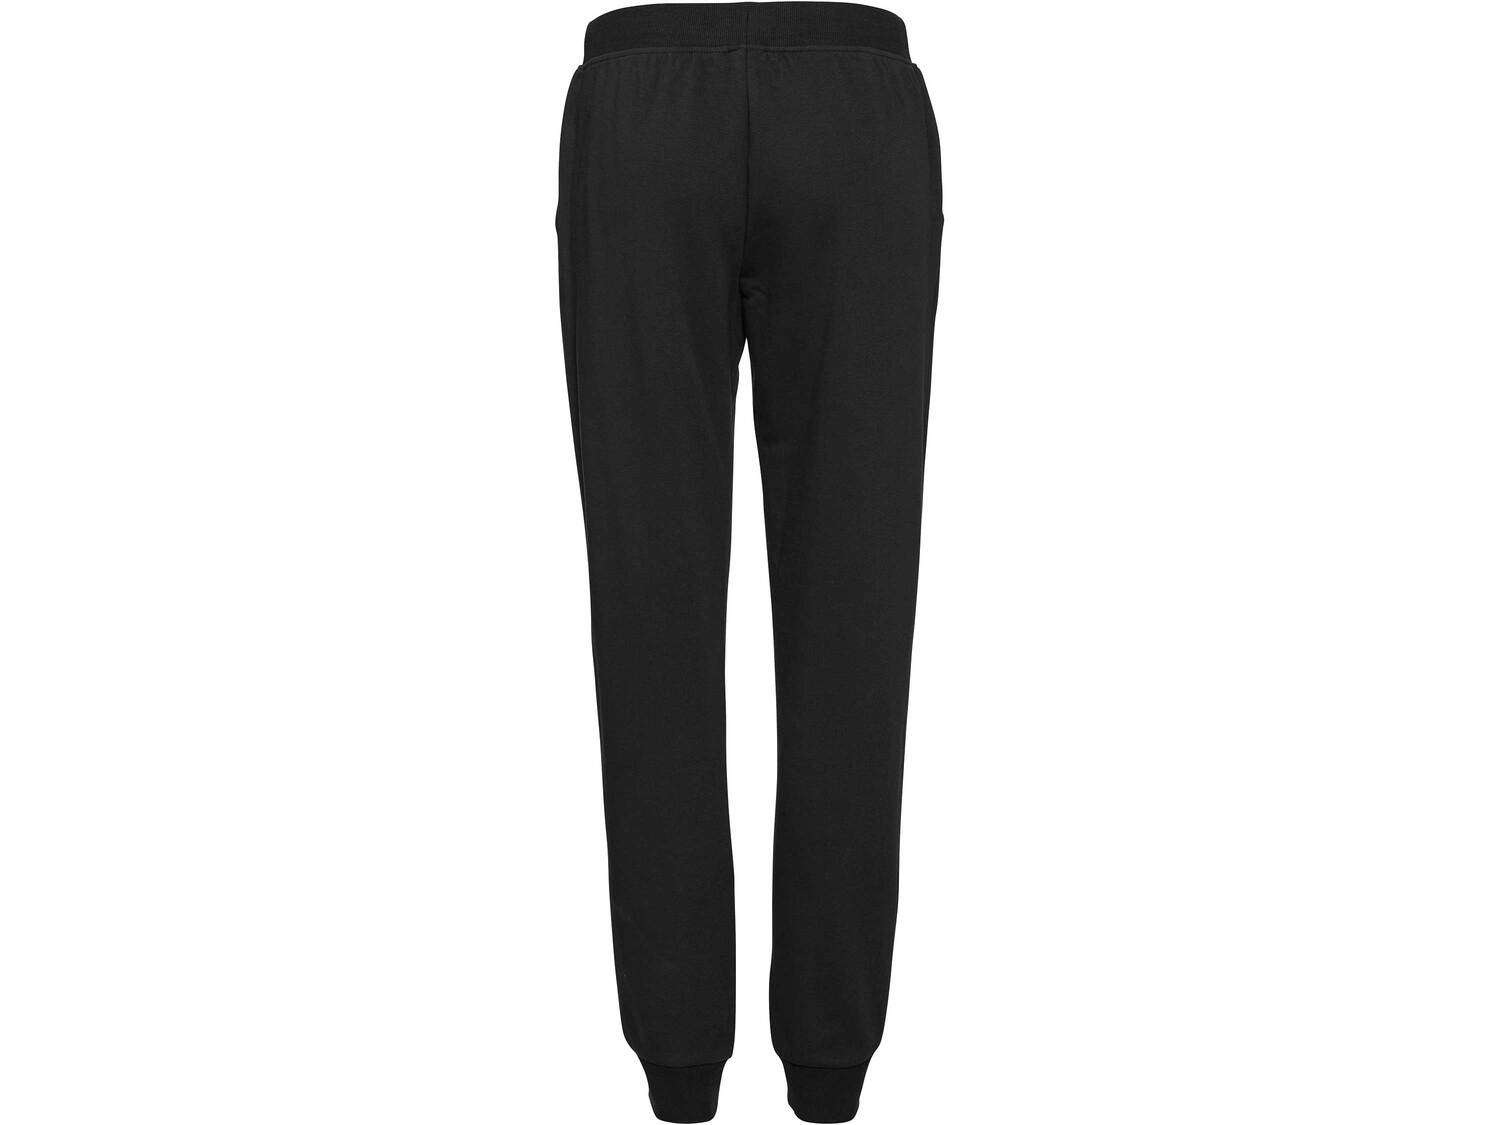 Spodnie dresowe damskie Esmara, cena 29,99 PLN 
- rozmiary: XS-L
- wysoka zawartość ...